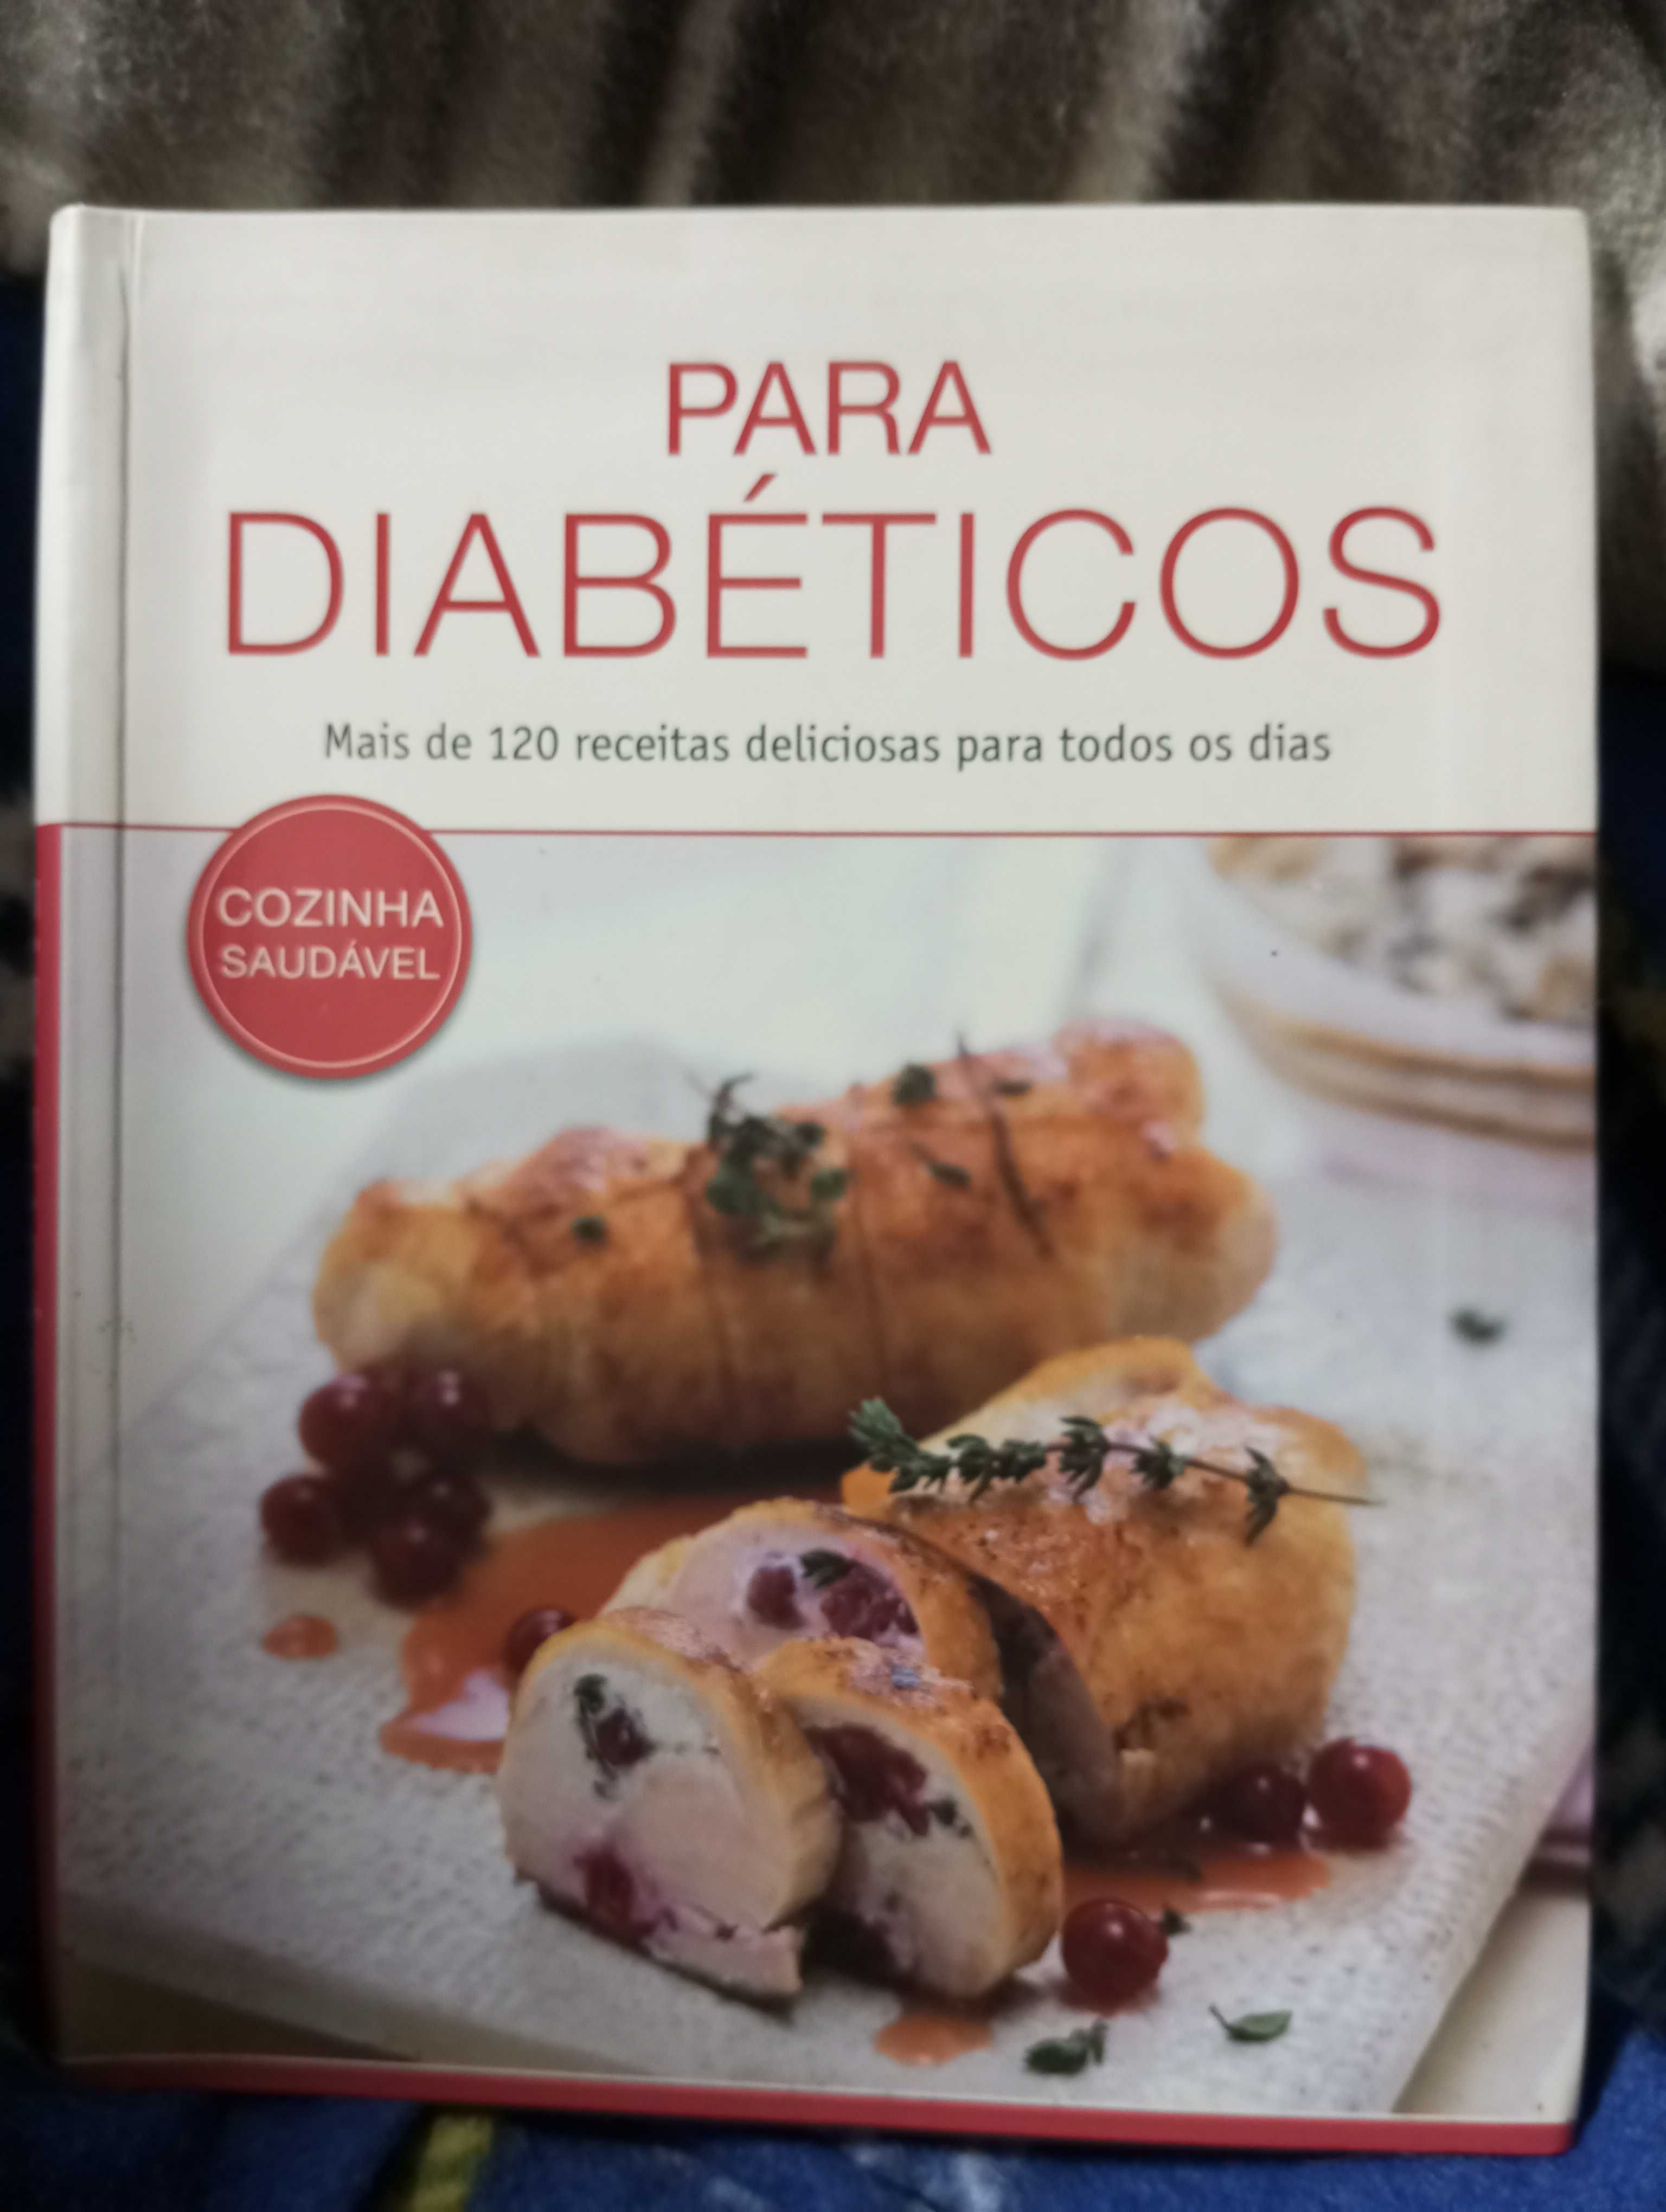 Para diabéticos, mais de 120 receitas